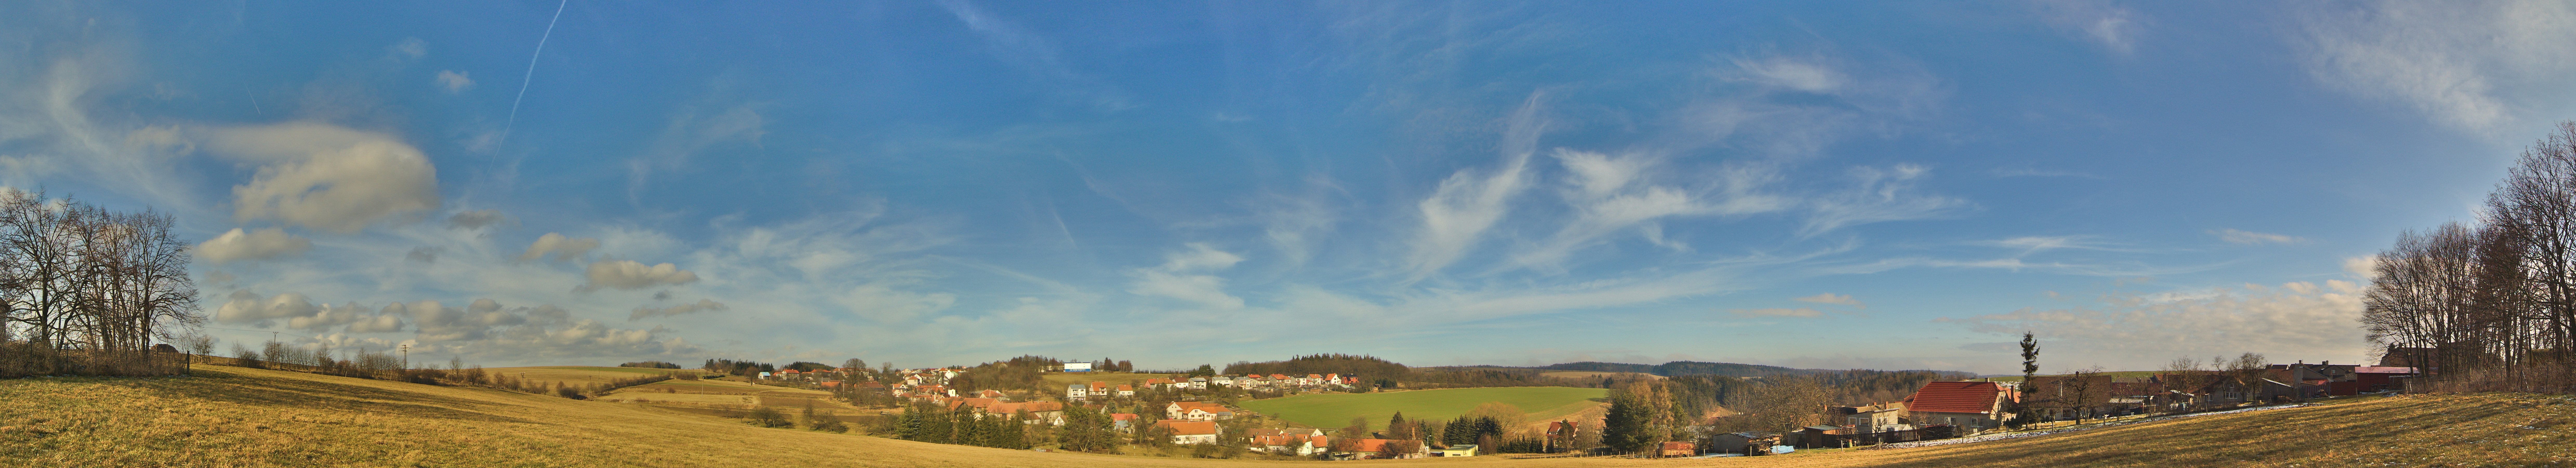 Panoramatický pohled na obec od zemědělského družstva, Lipová, okres Prostějov.jpg